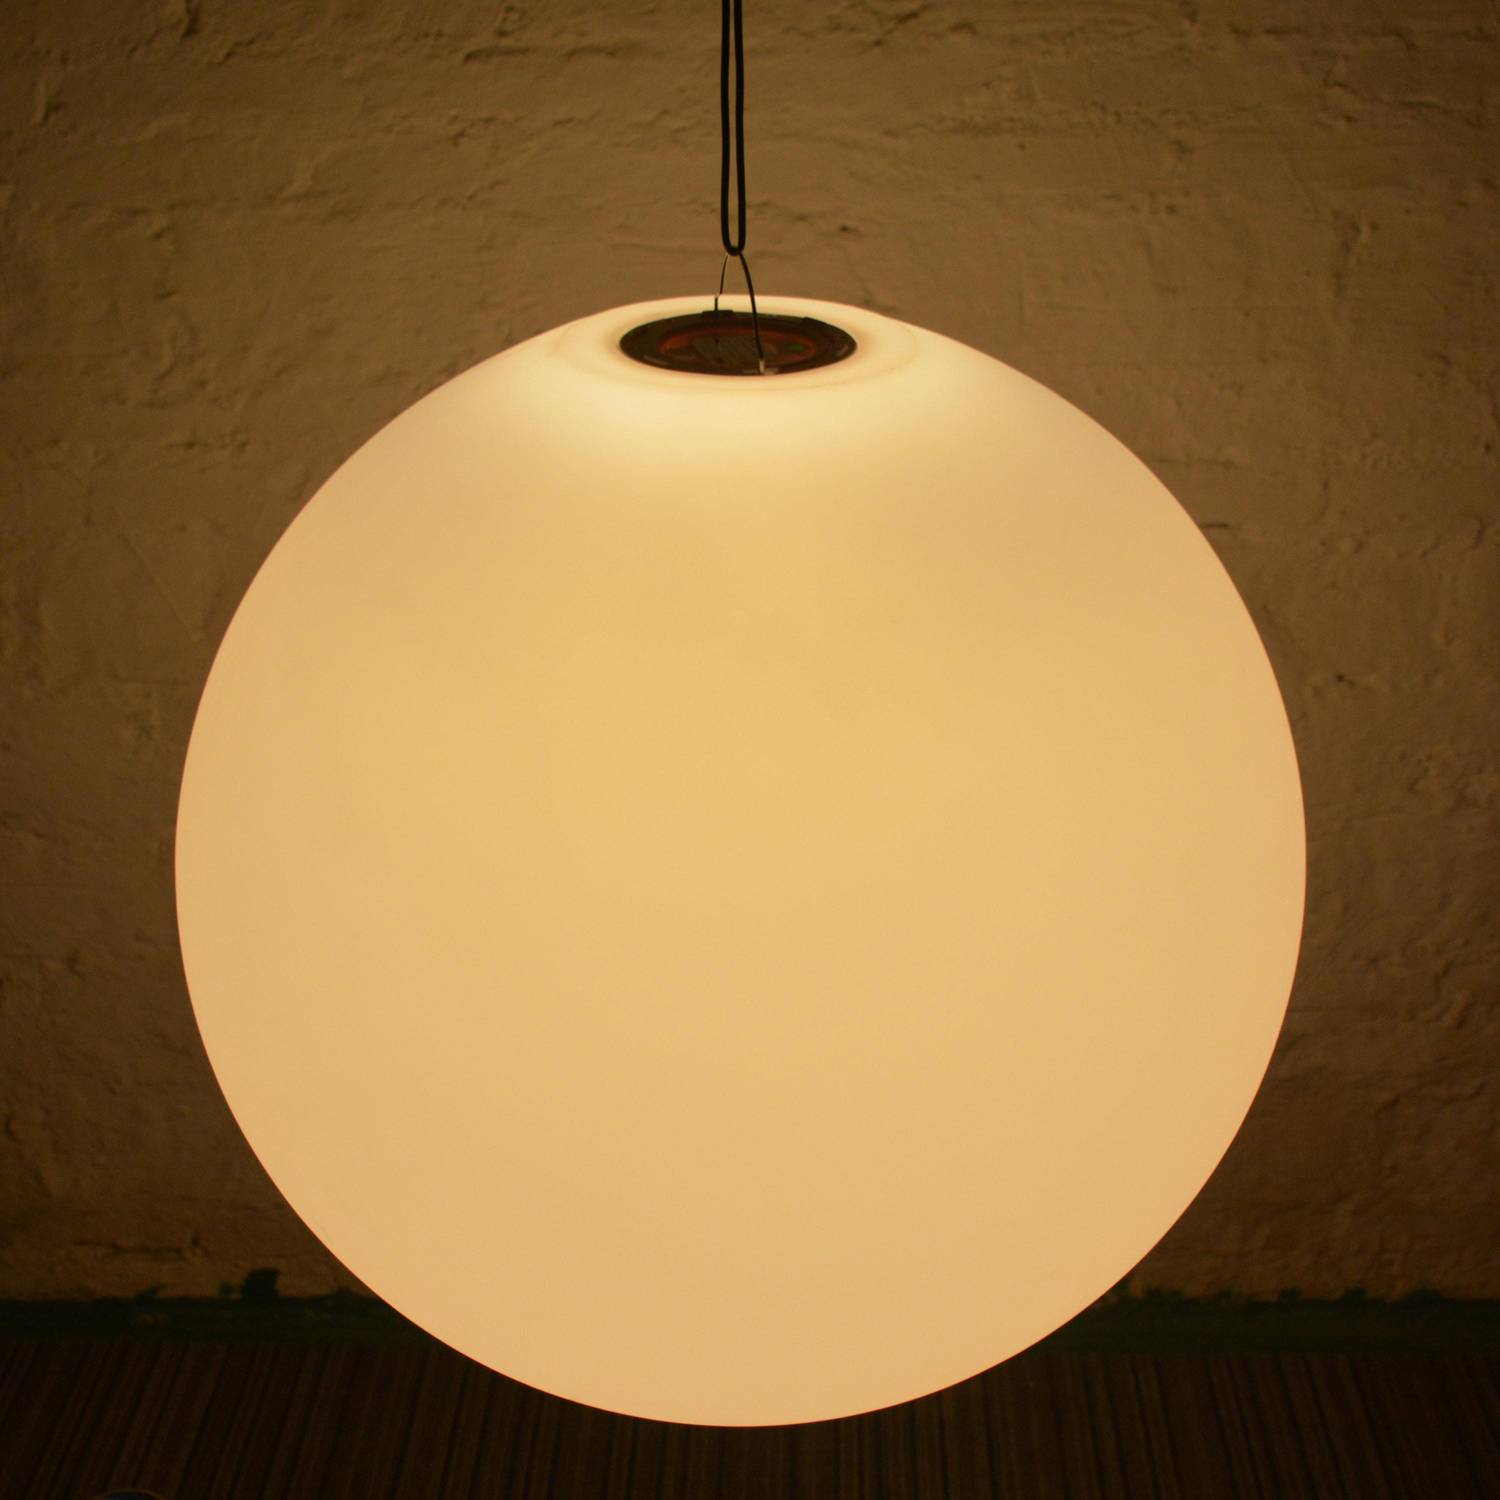 LED Bollamp 40cm, decoratieve lichtbol, Ø40cm, warm wit, afstandsbediening Photo7